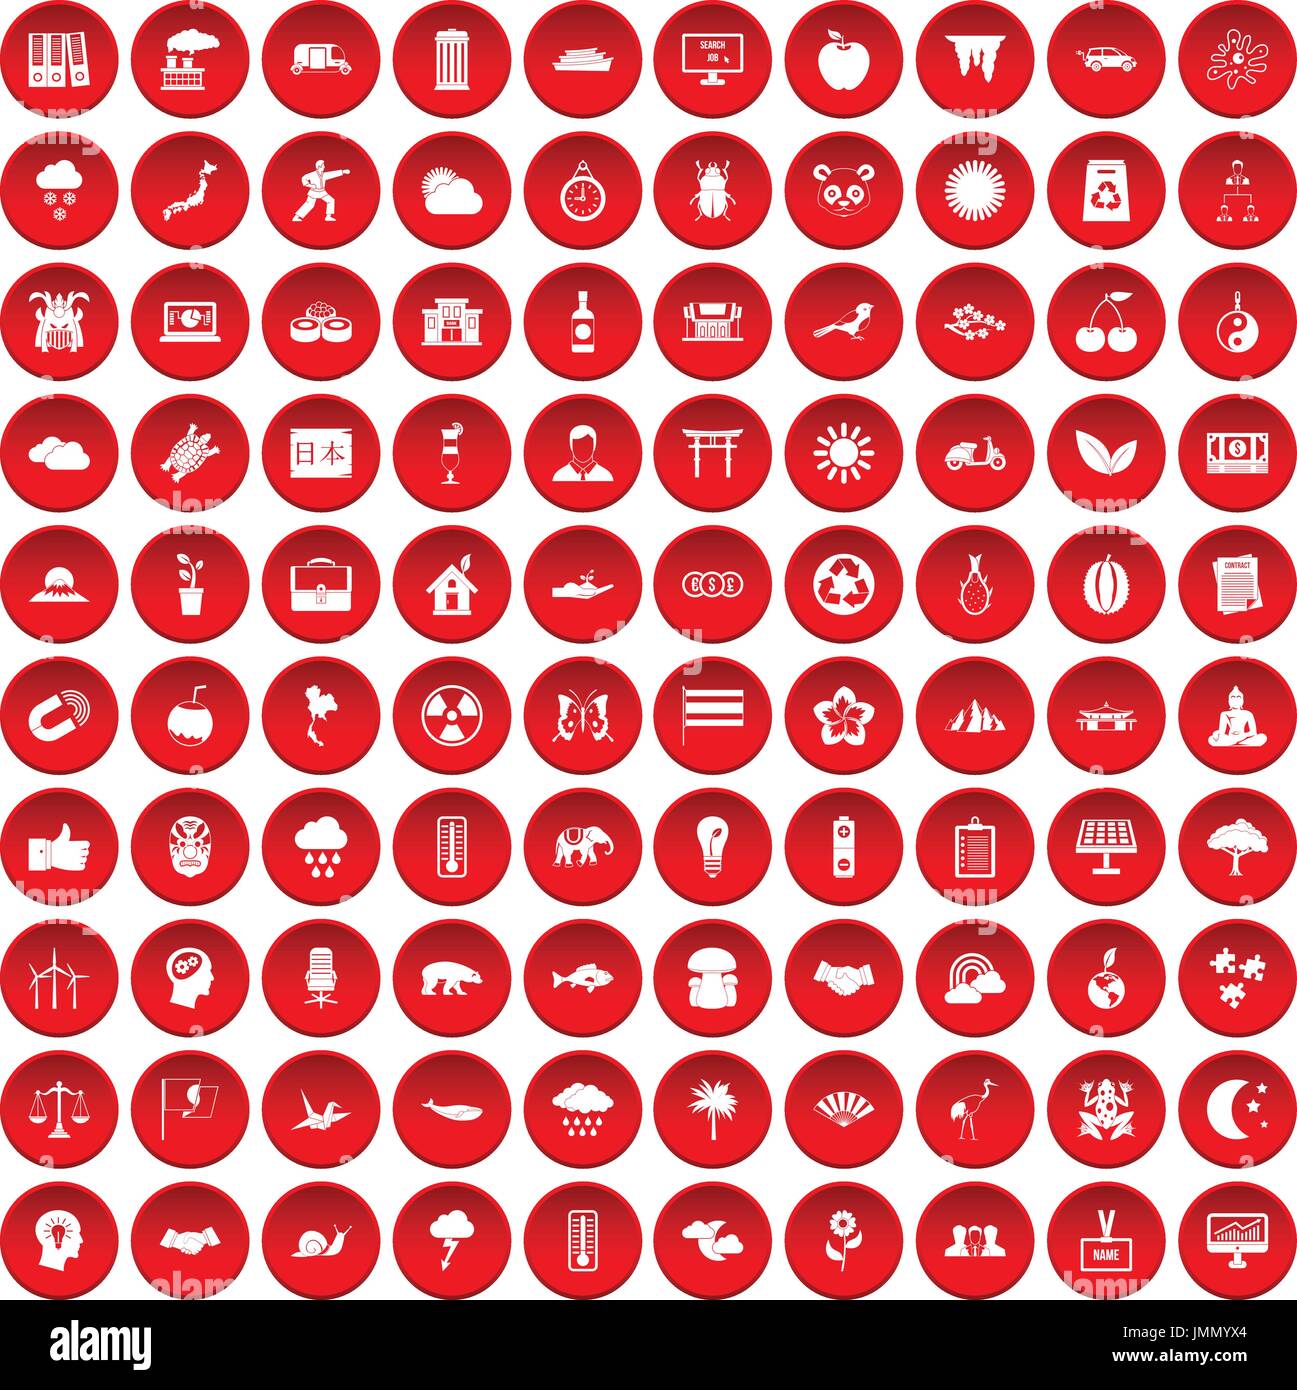 100 armonia set di icone di colore rosso Illustrazione Vettoriale